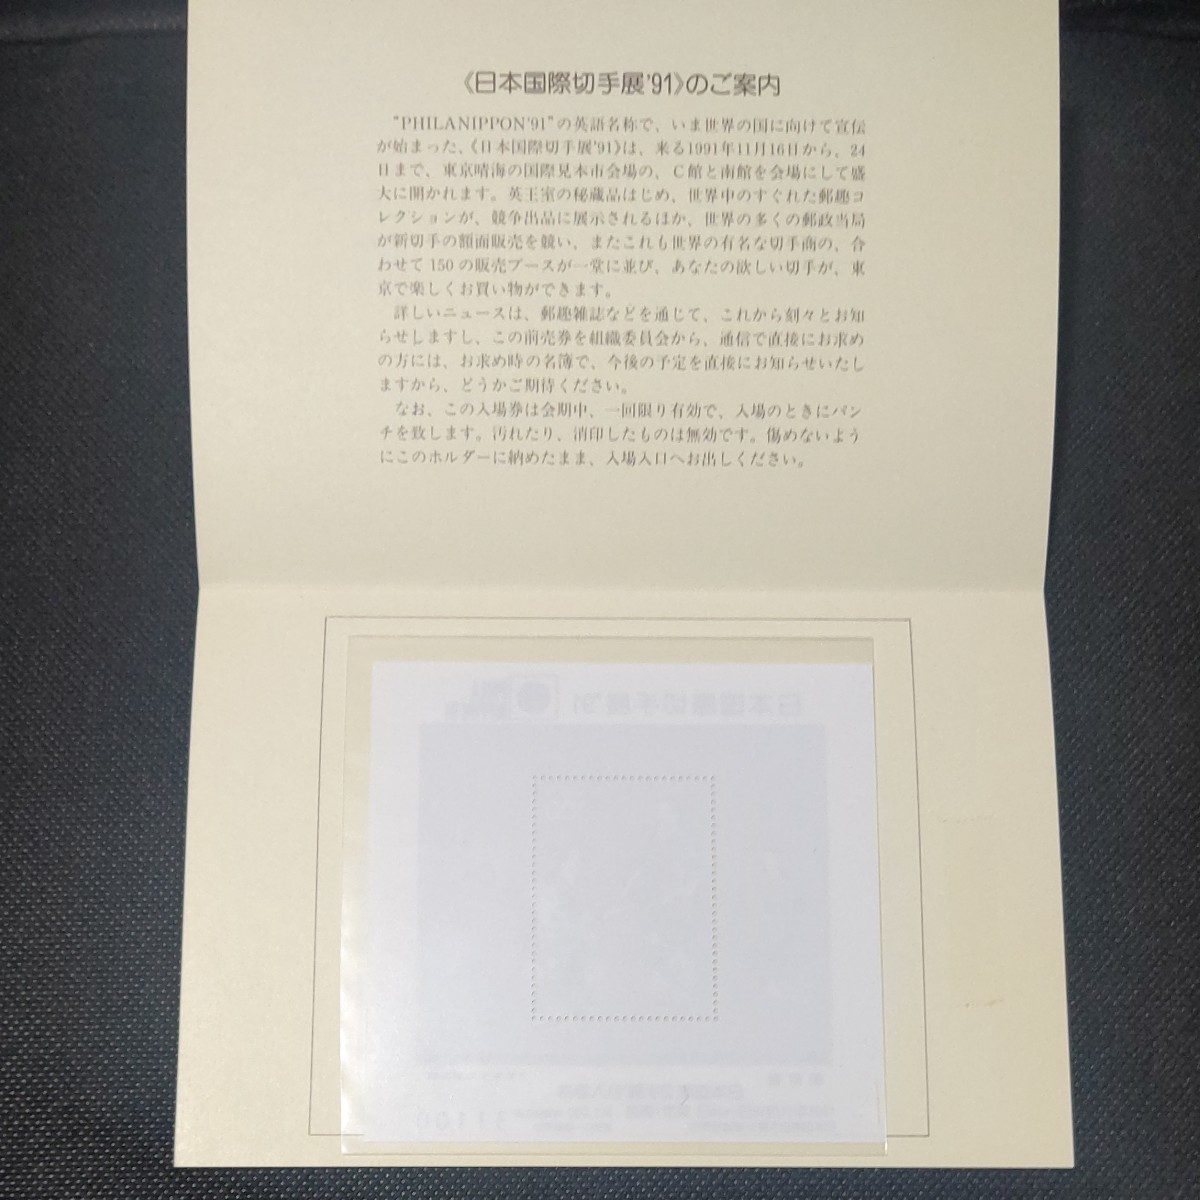 日本国際切手展91年 小型シート 入場券シリアルナンバー